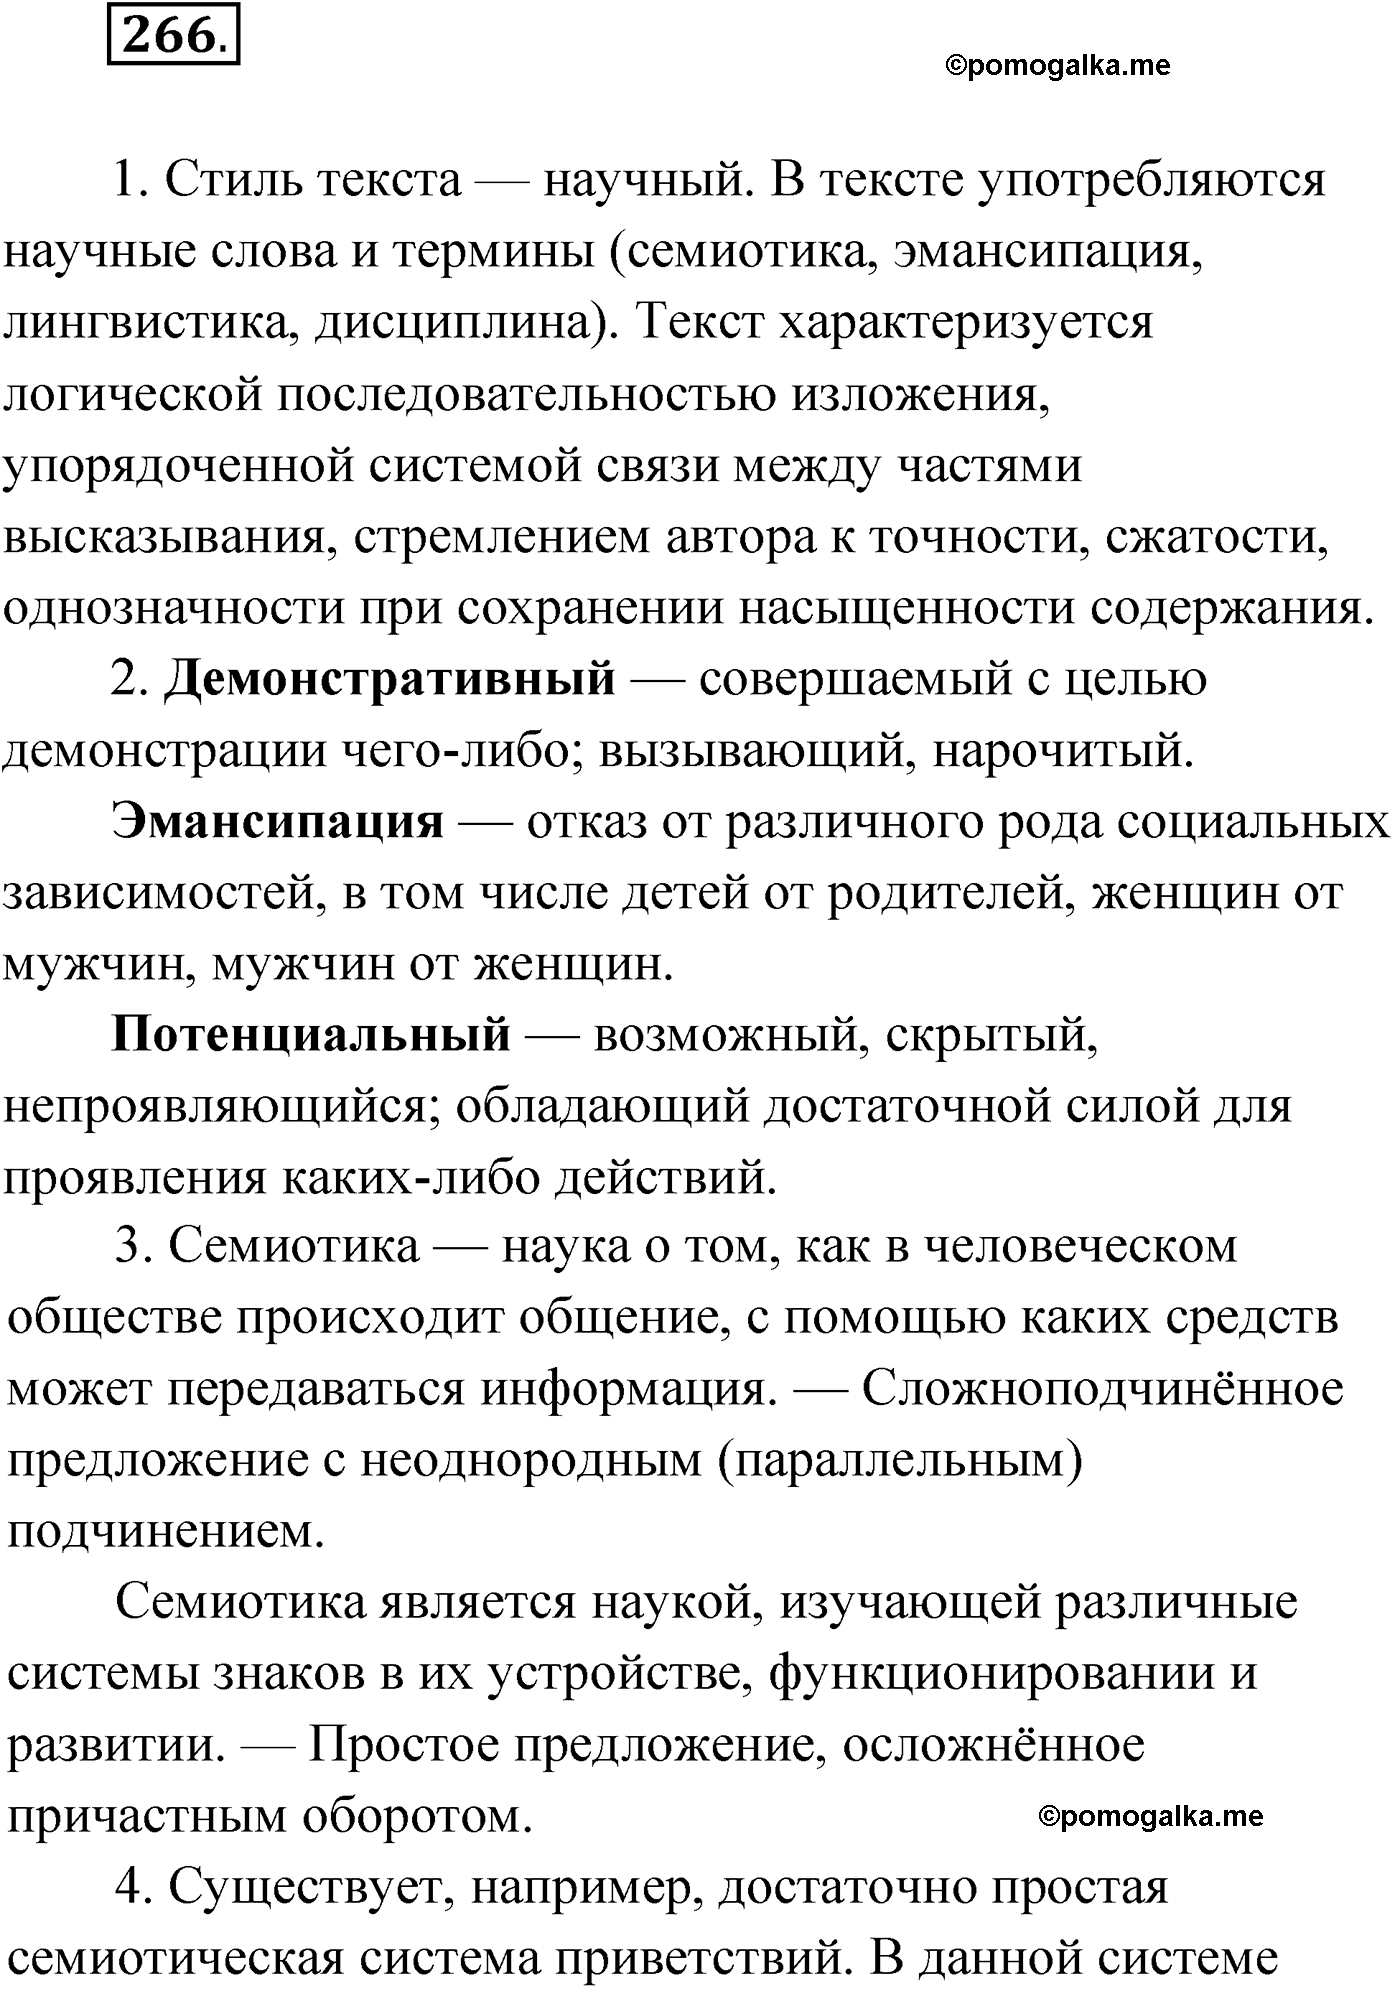 упражнение №266 русский язык 9 класс Мурина 2019 год